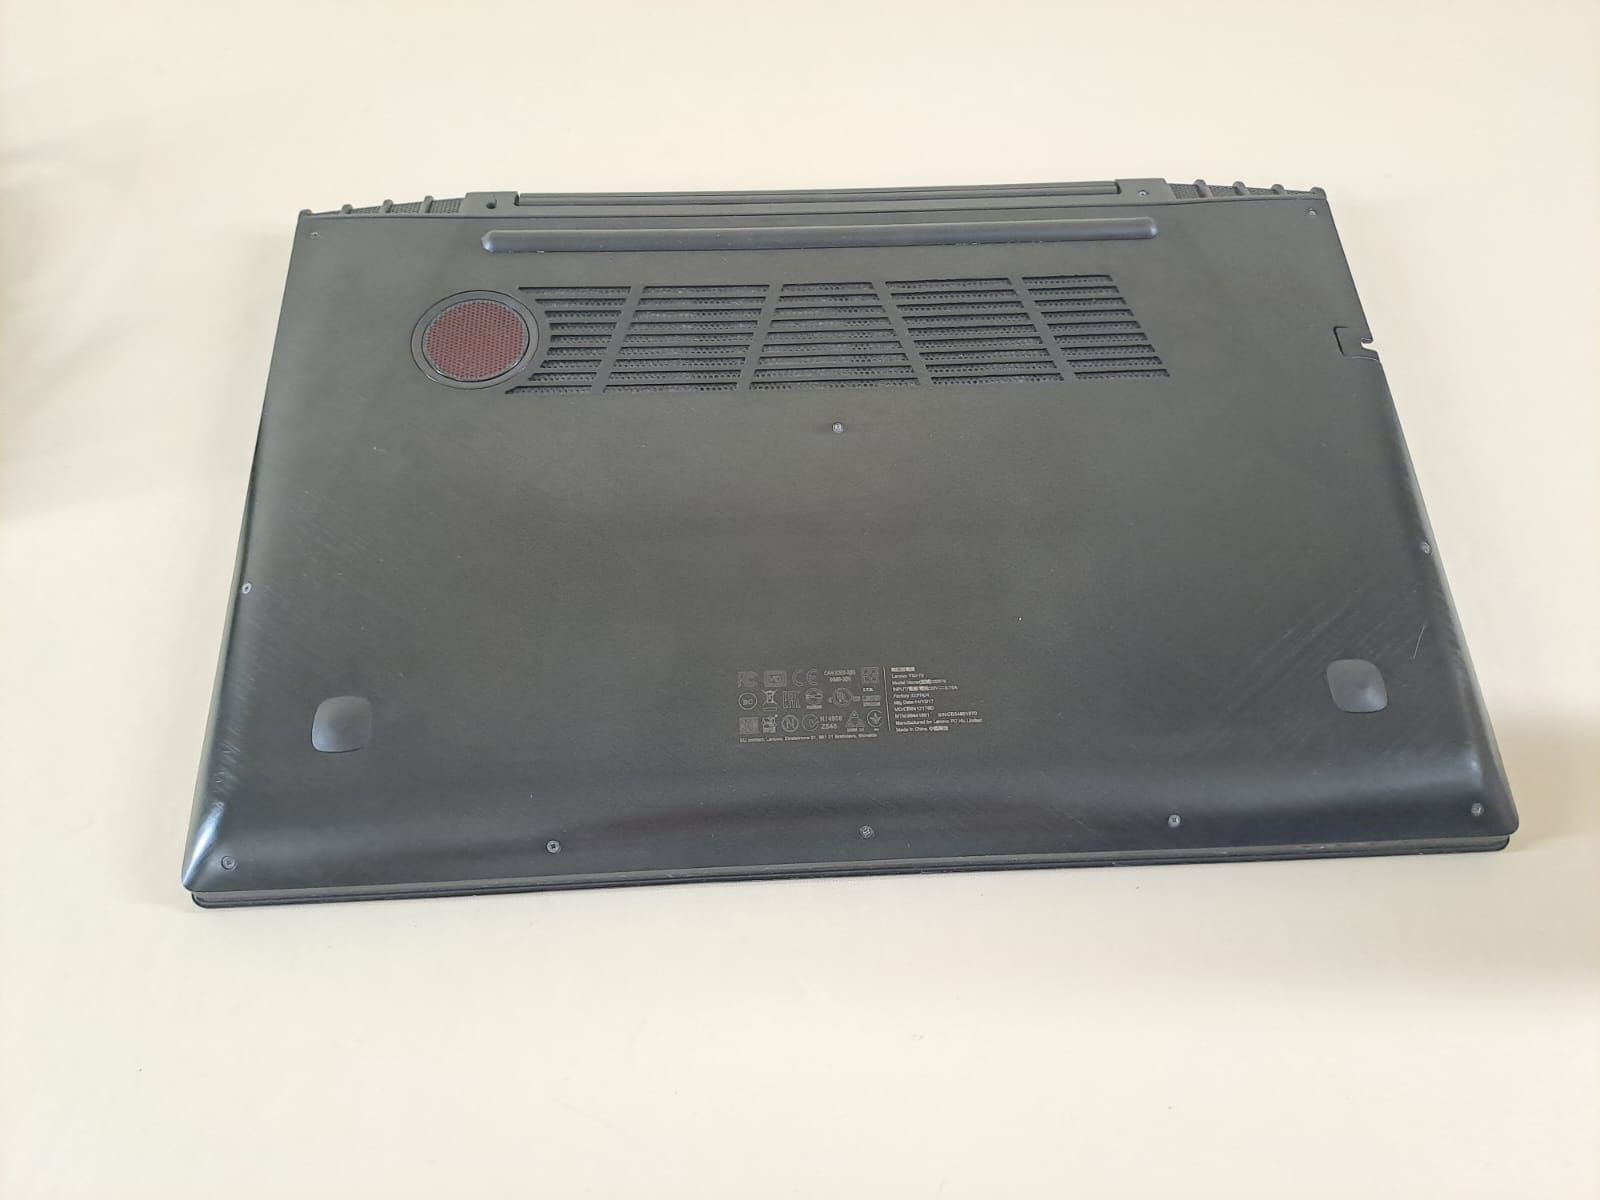 Laptop gamingowy lenovo y50-70 możliwa wymiana